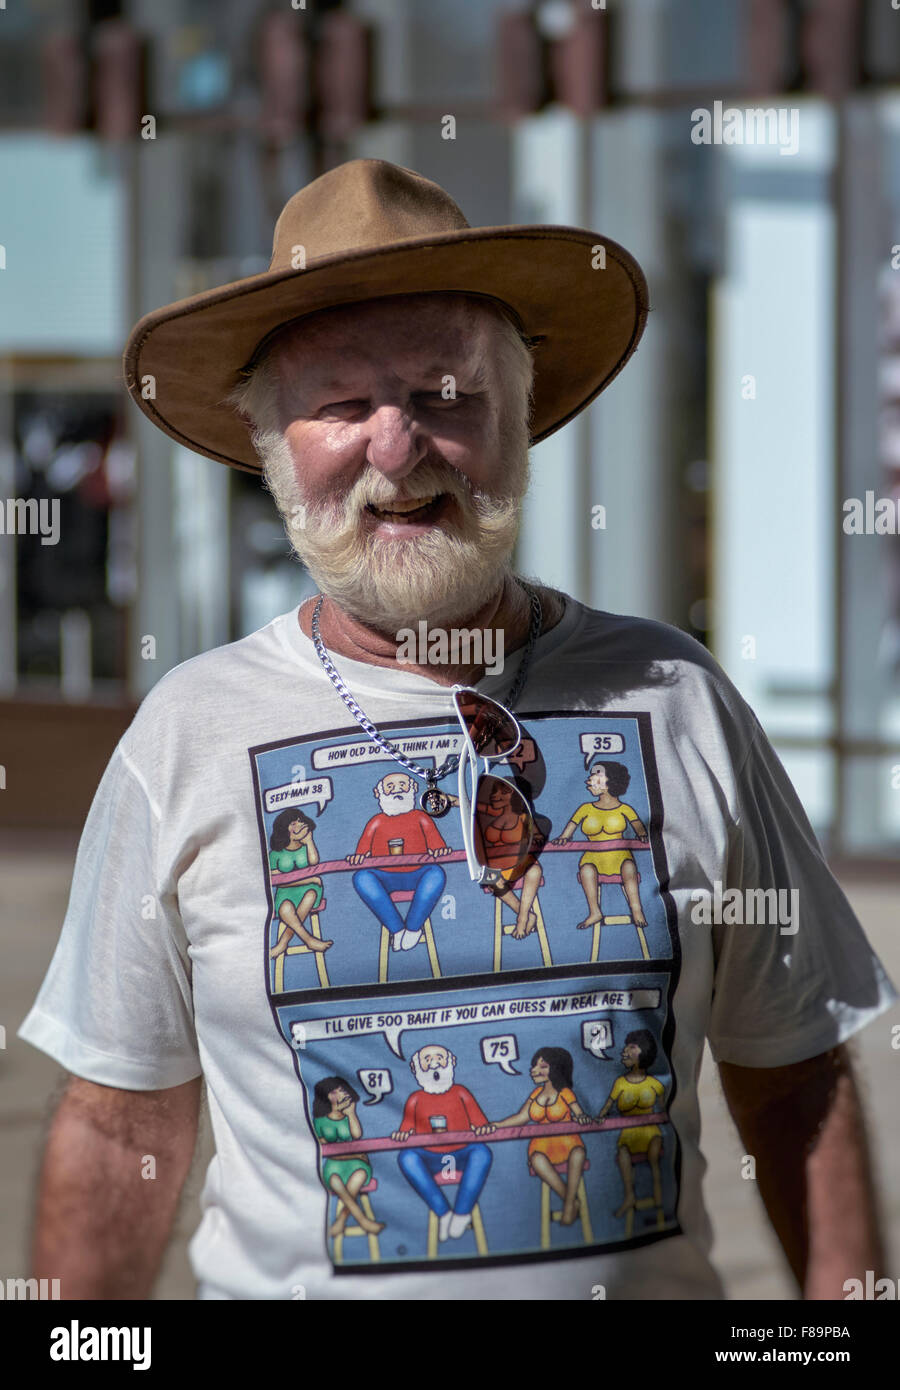 Personalisiertes T-Shirt. Ein älterer Mann trägt ein personalisiertes T-Shirt mit Barmädchen-Geplänkel. Pattaya Thailand S. E. Asien Stockfoto